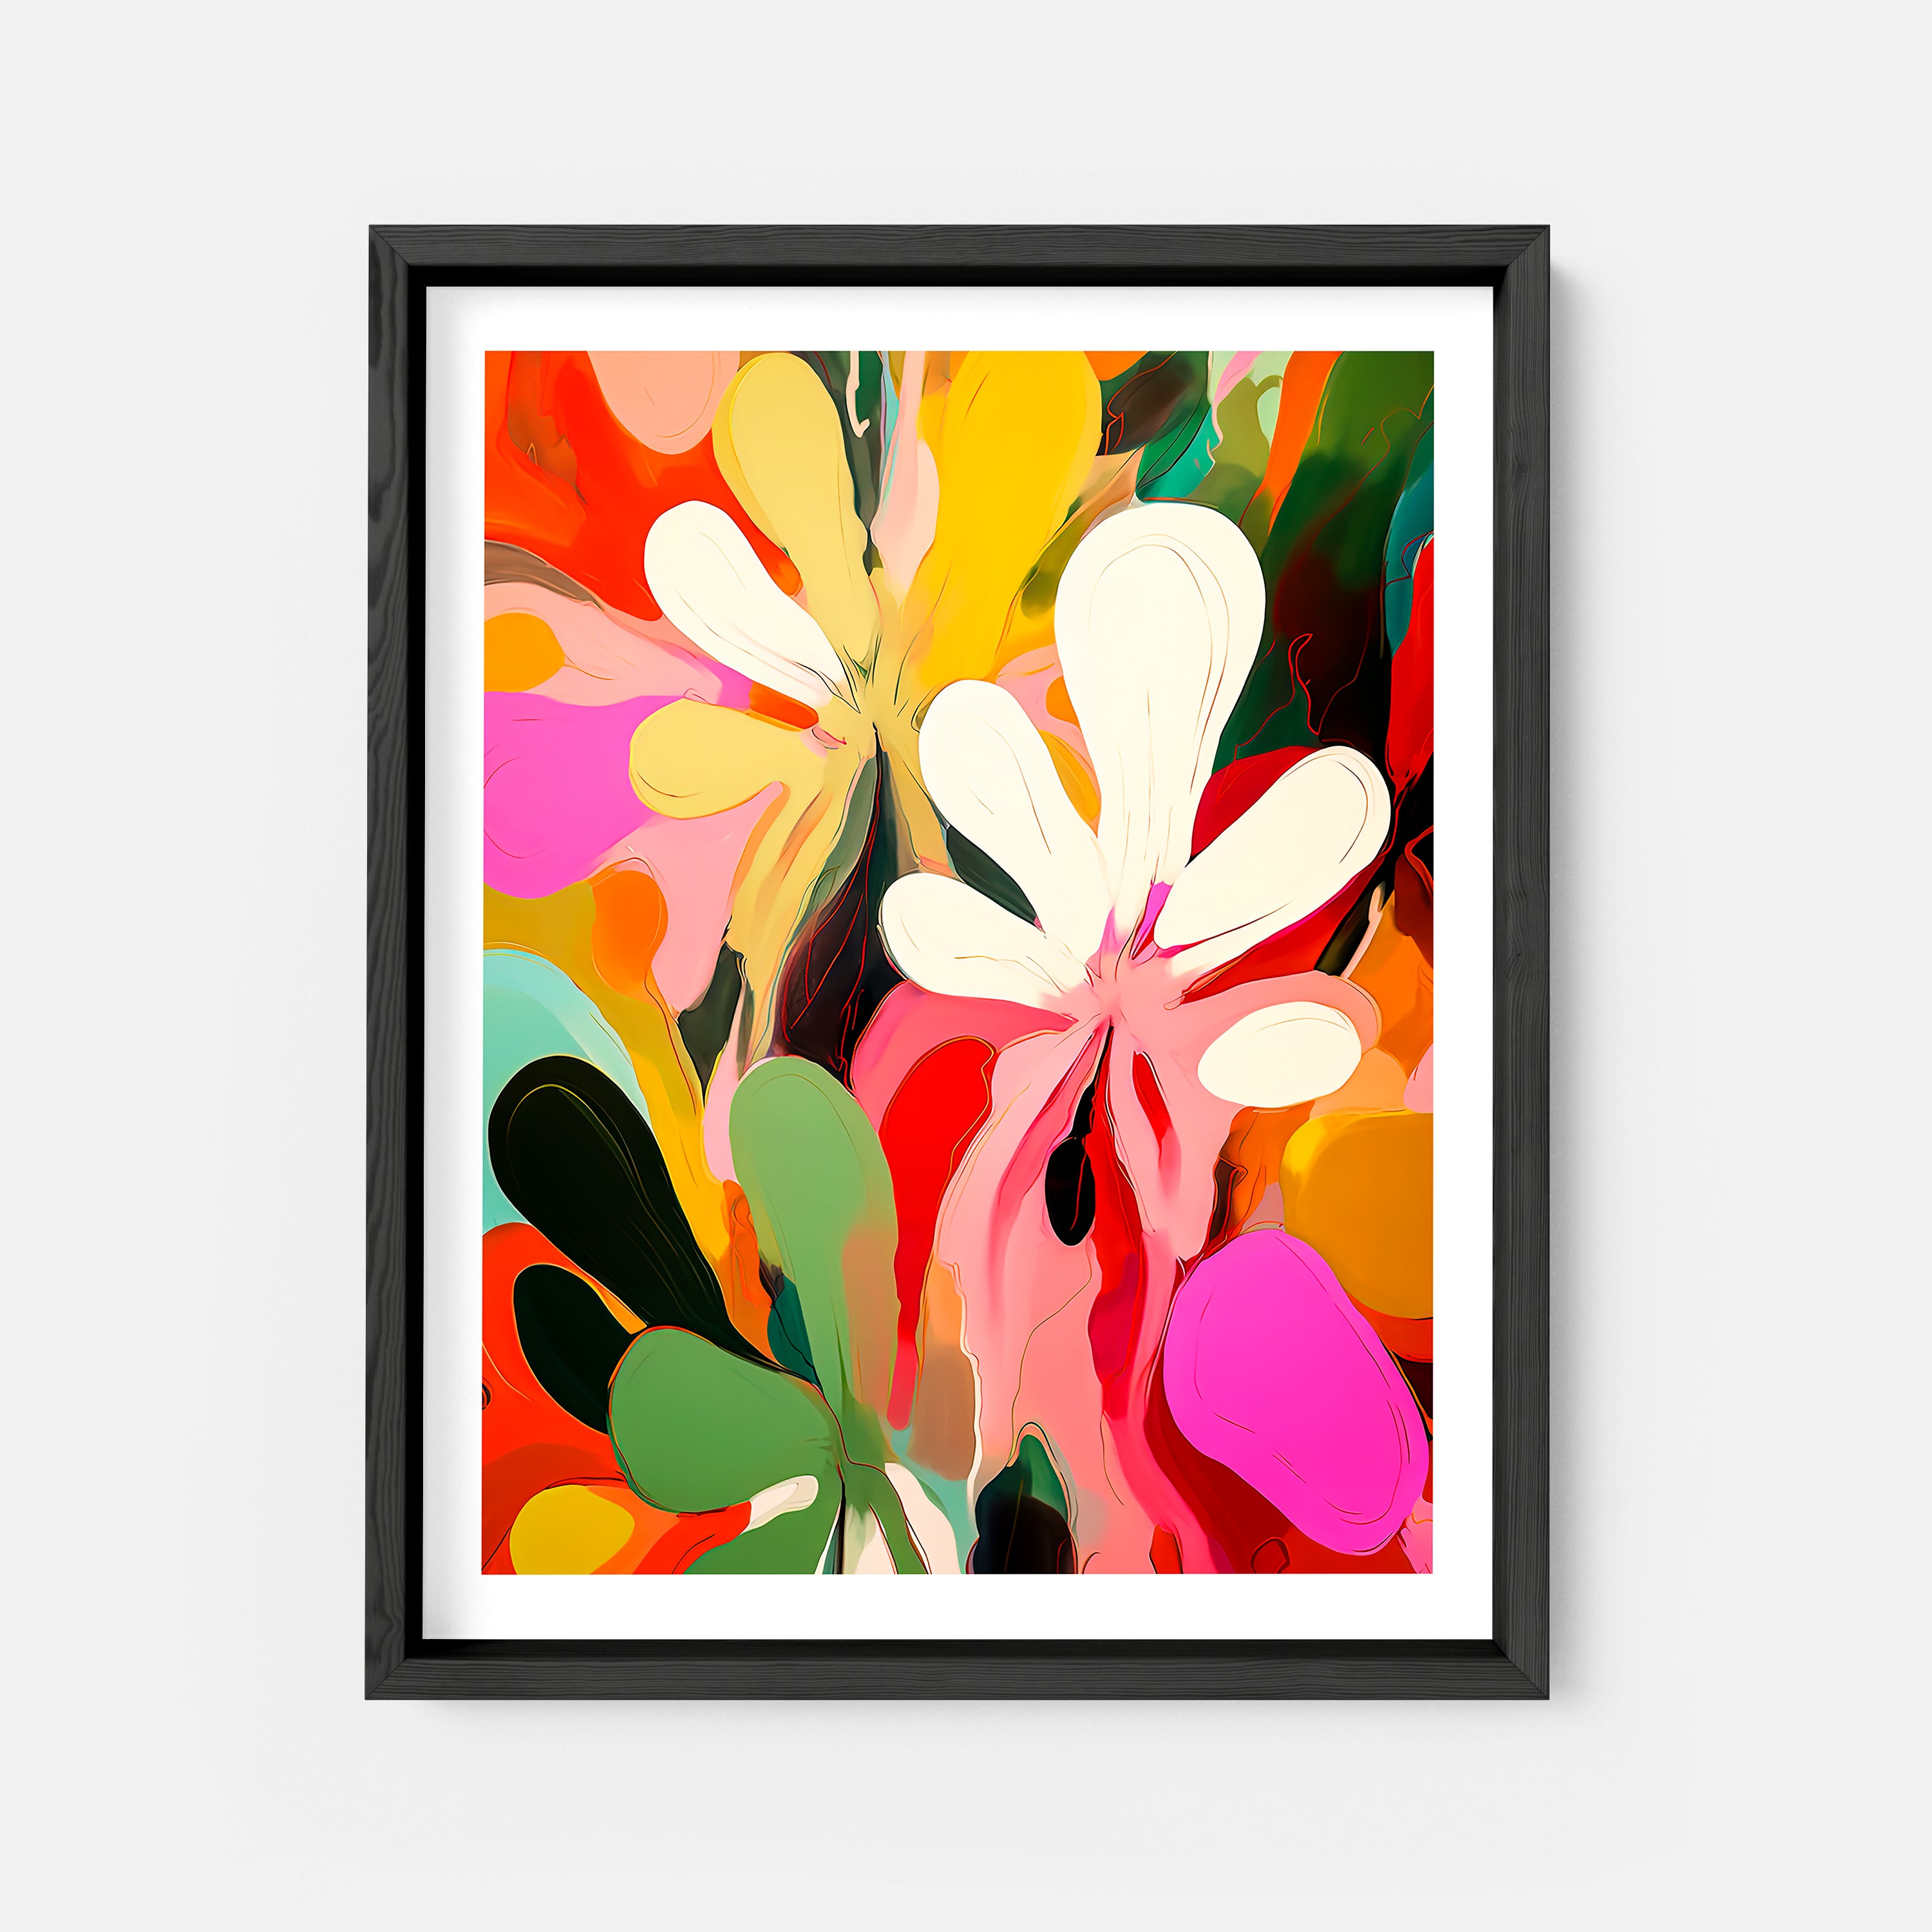 AI Art Print No. 1 - Abstract Floral